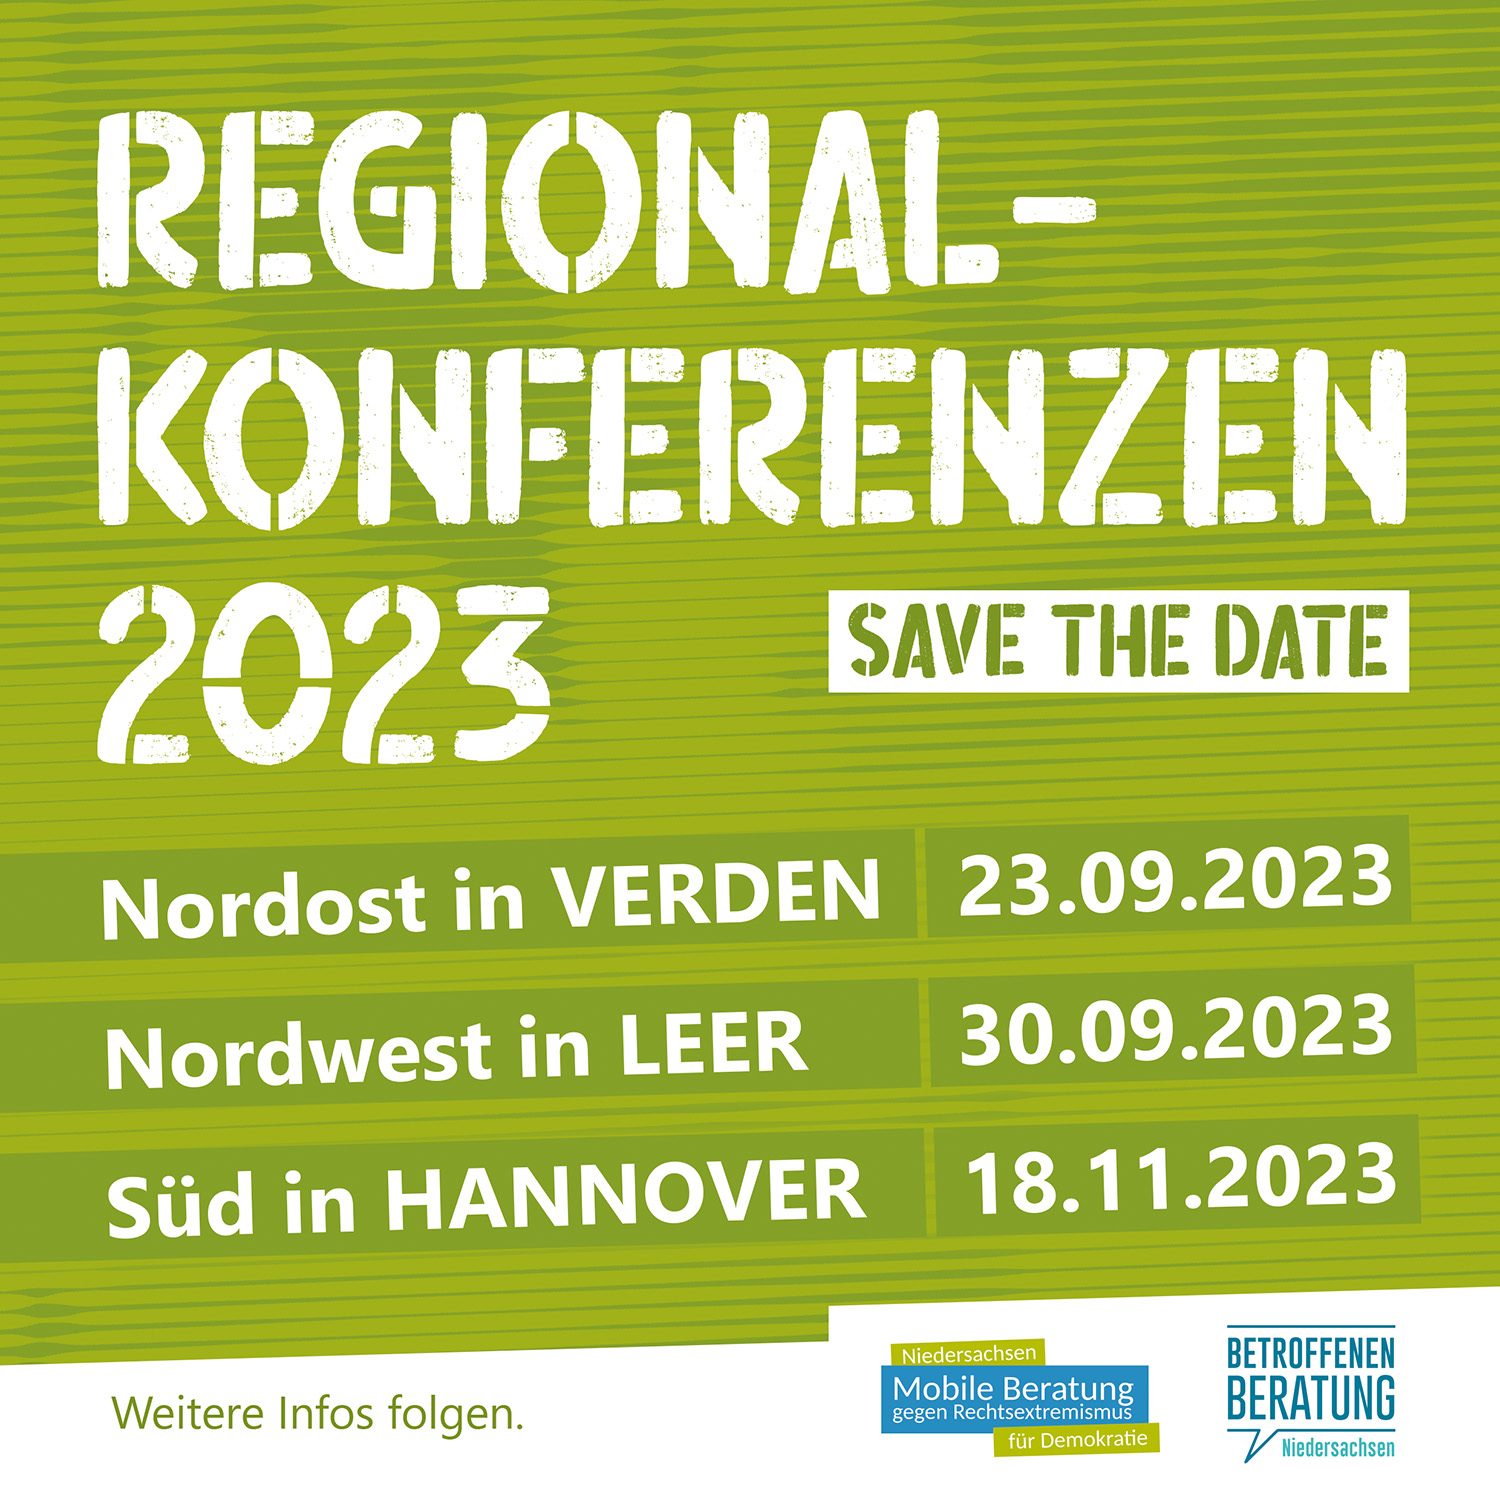 Save the date: Regionalkonferenz Süd in Hannover